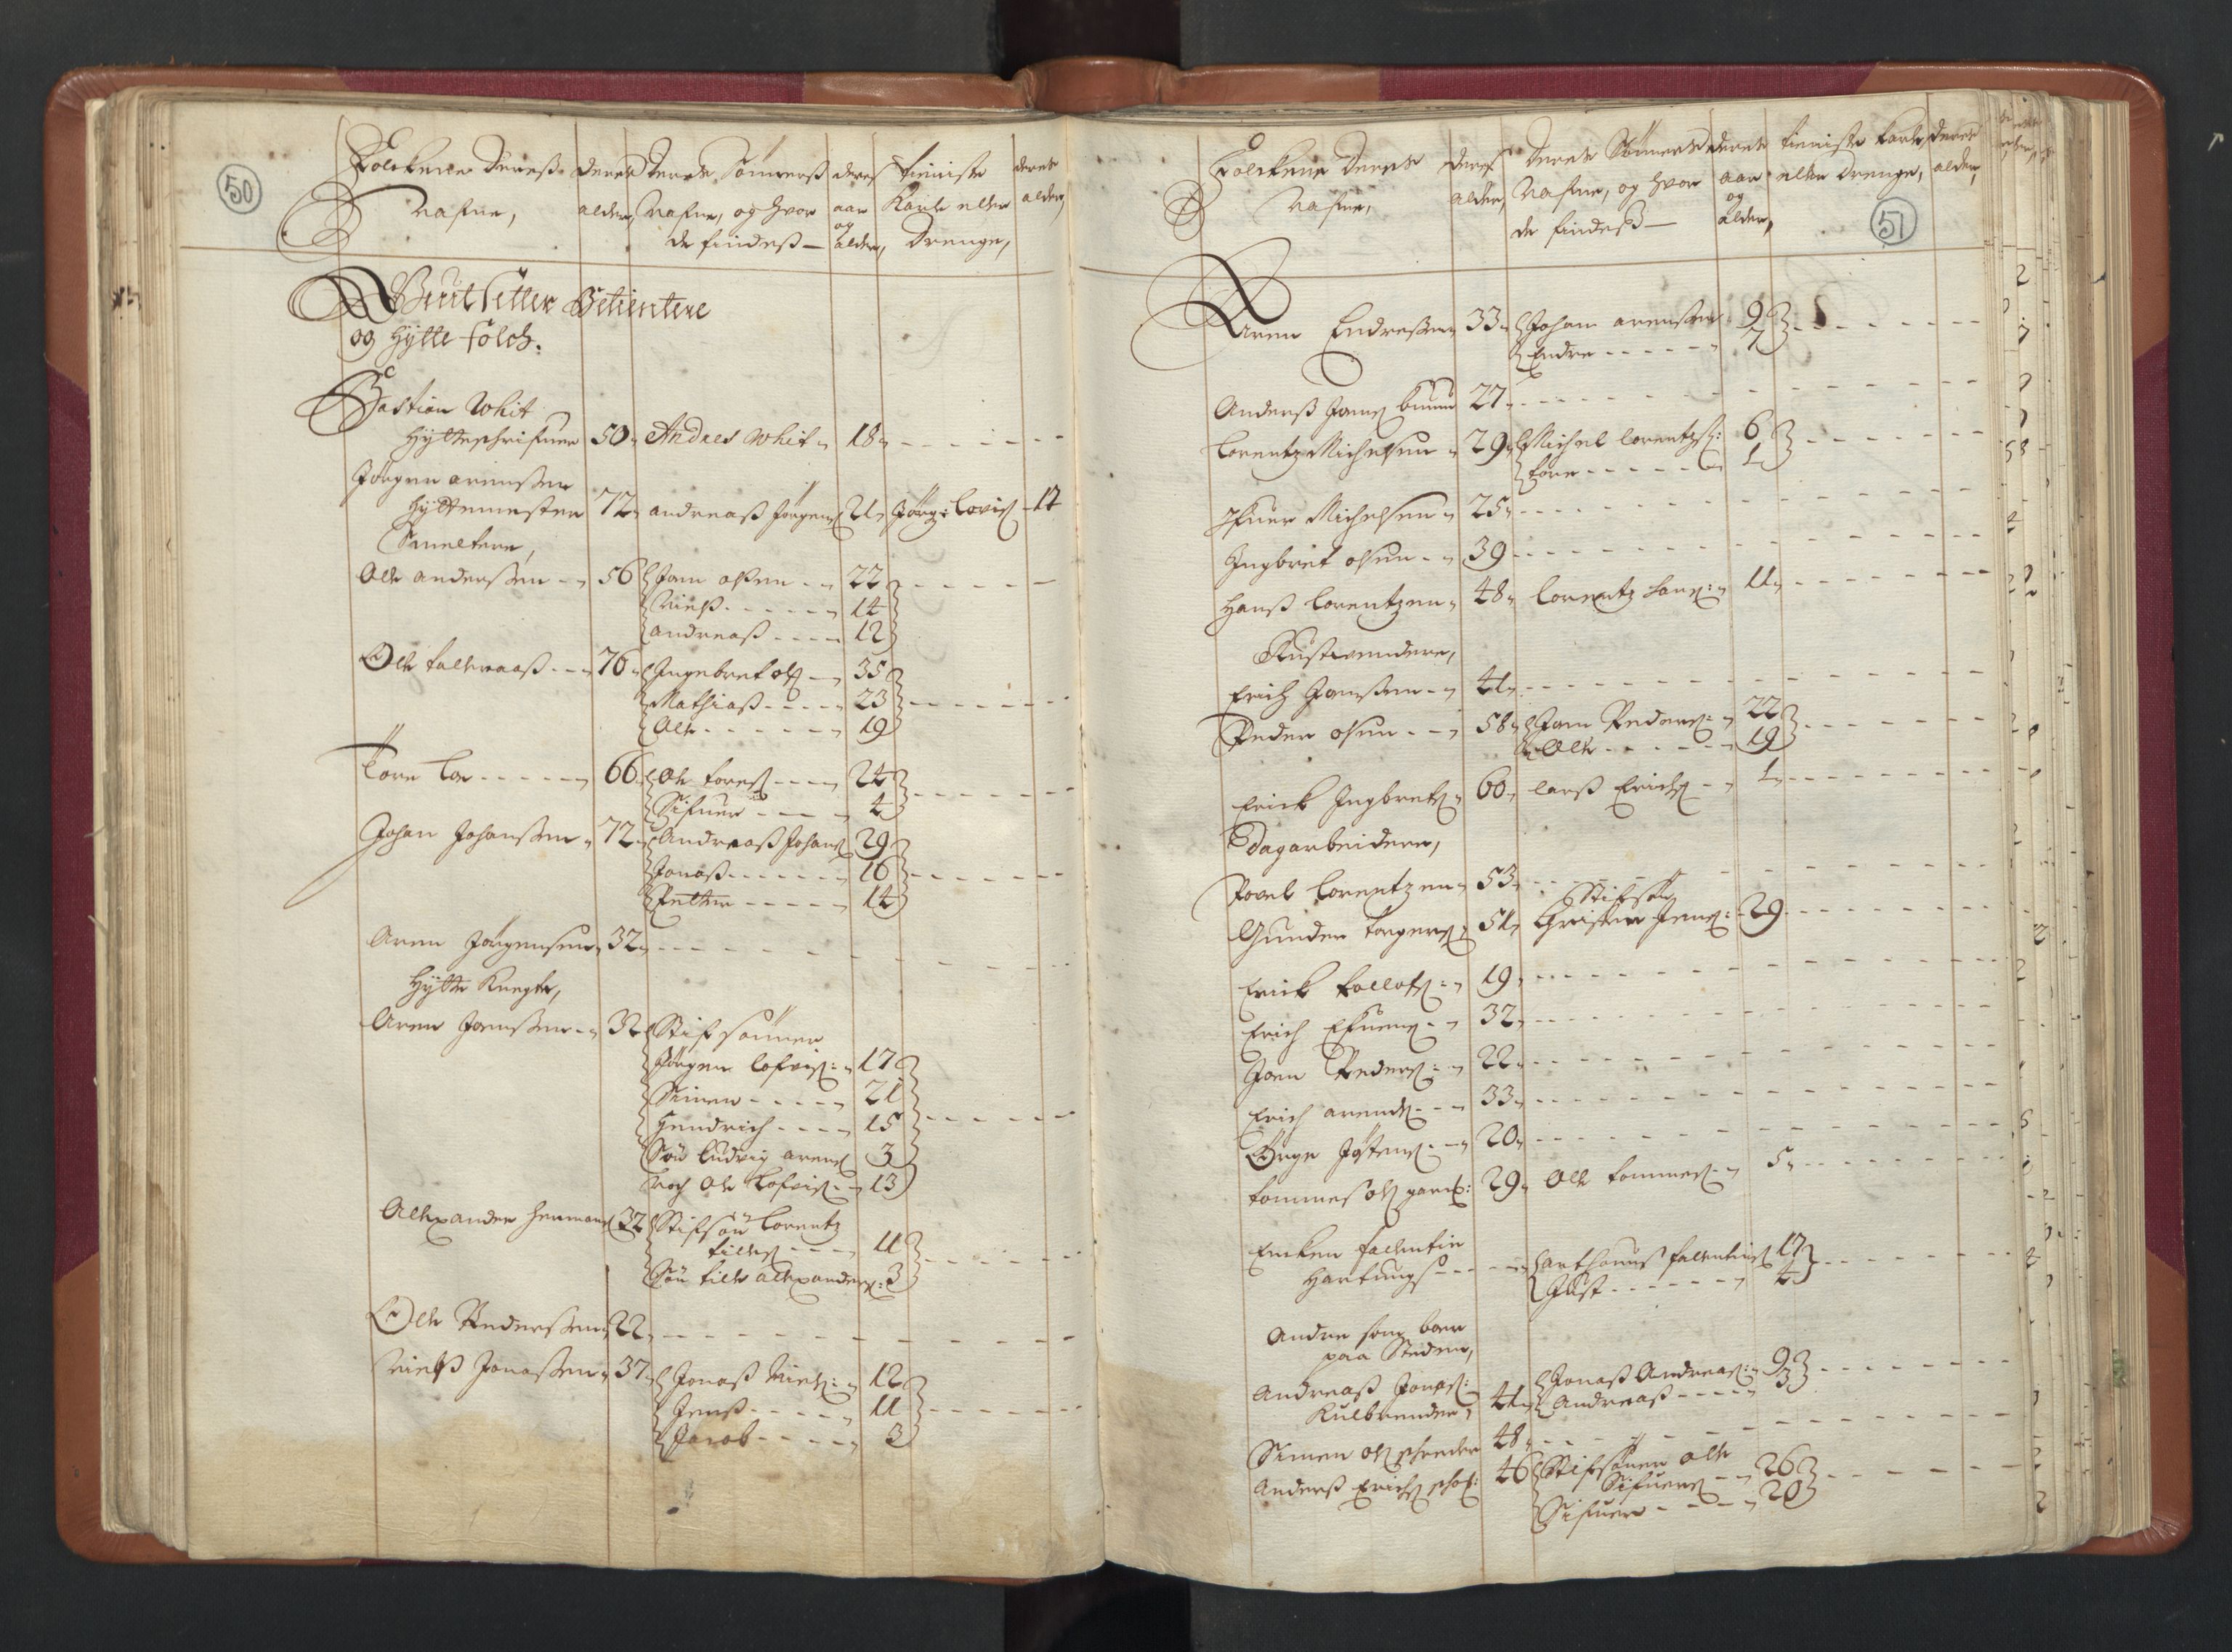 RA, Manntallet 1701, nr. 13: Orkdal fogderi og Gauldal fogderi med Røros kobberverk, 1701, s. 50-51